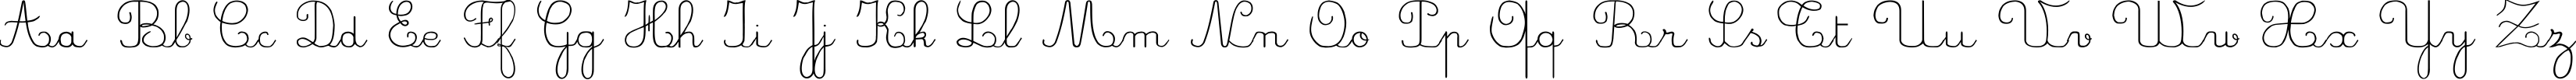 Пример написания английского алфавита шрифтом CrayonL